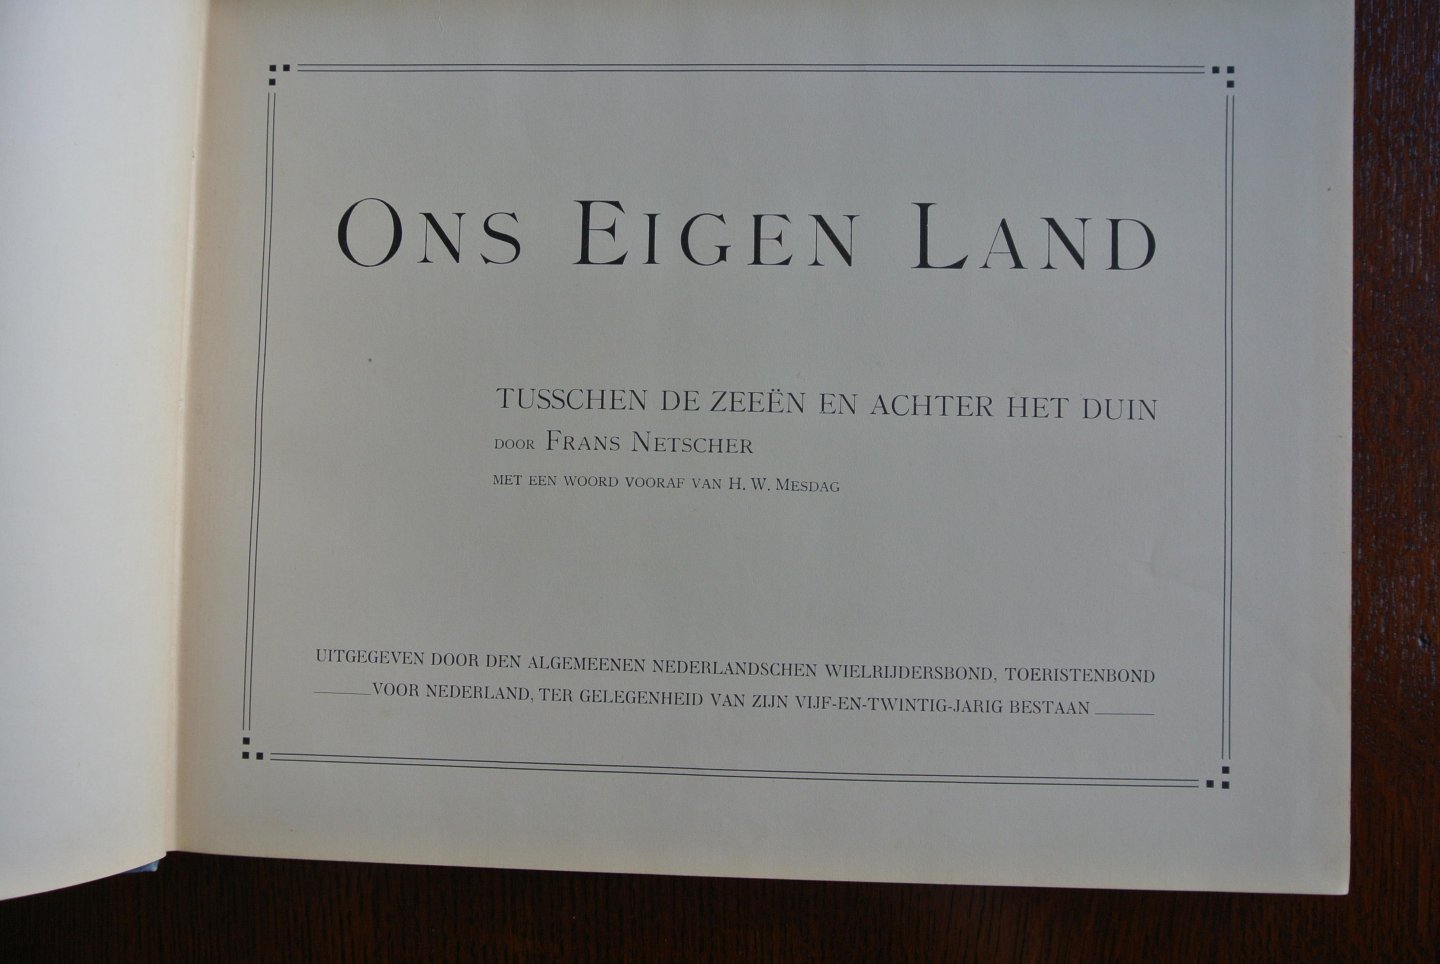 Netscher, Frans. Met een woord vooraf van H.W. Mesdag - ONS EIGEN LAND. TUSSCHEN DE ZEEËN EN ACHTER HET DUIN